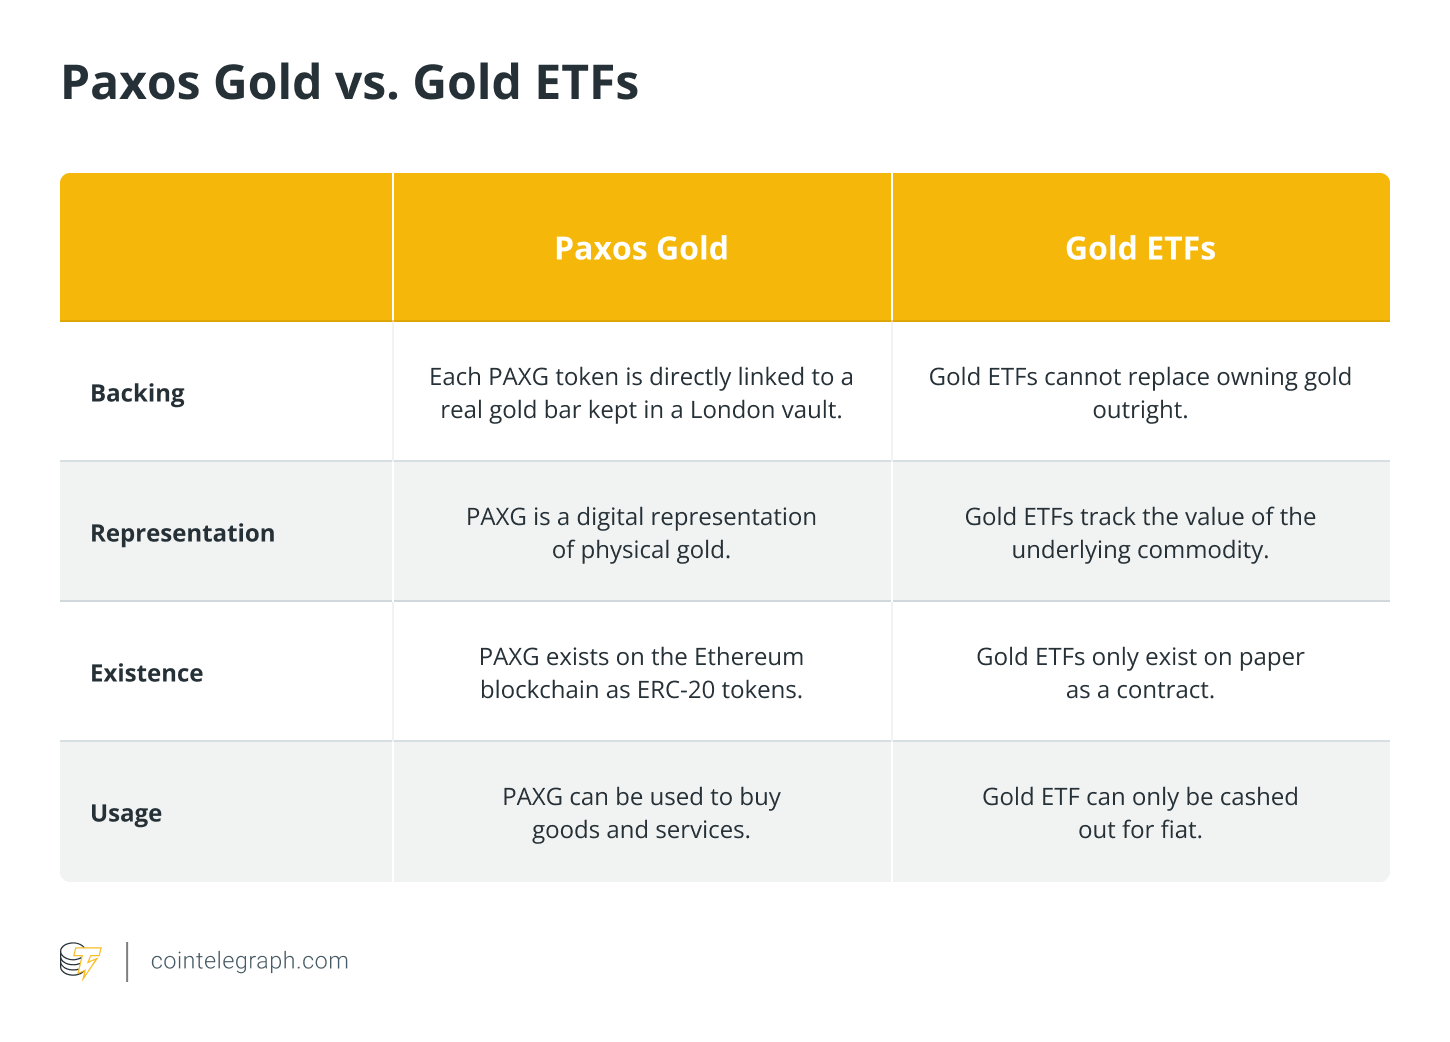 Paxos Gold vs. Gold ETF's